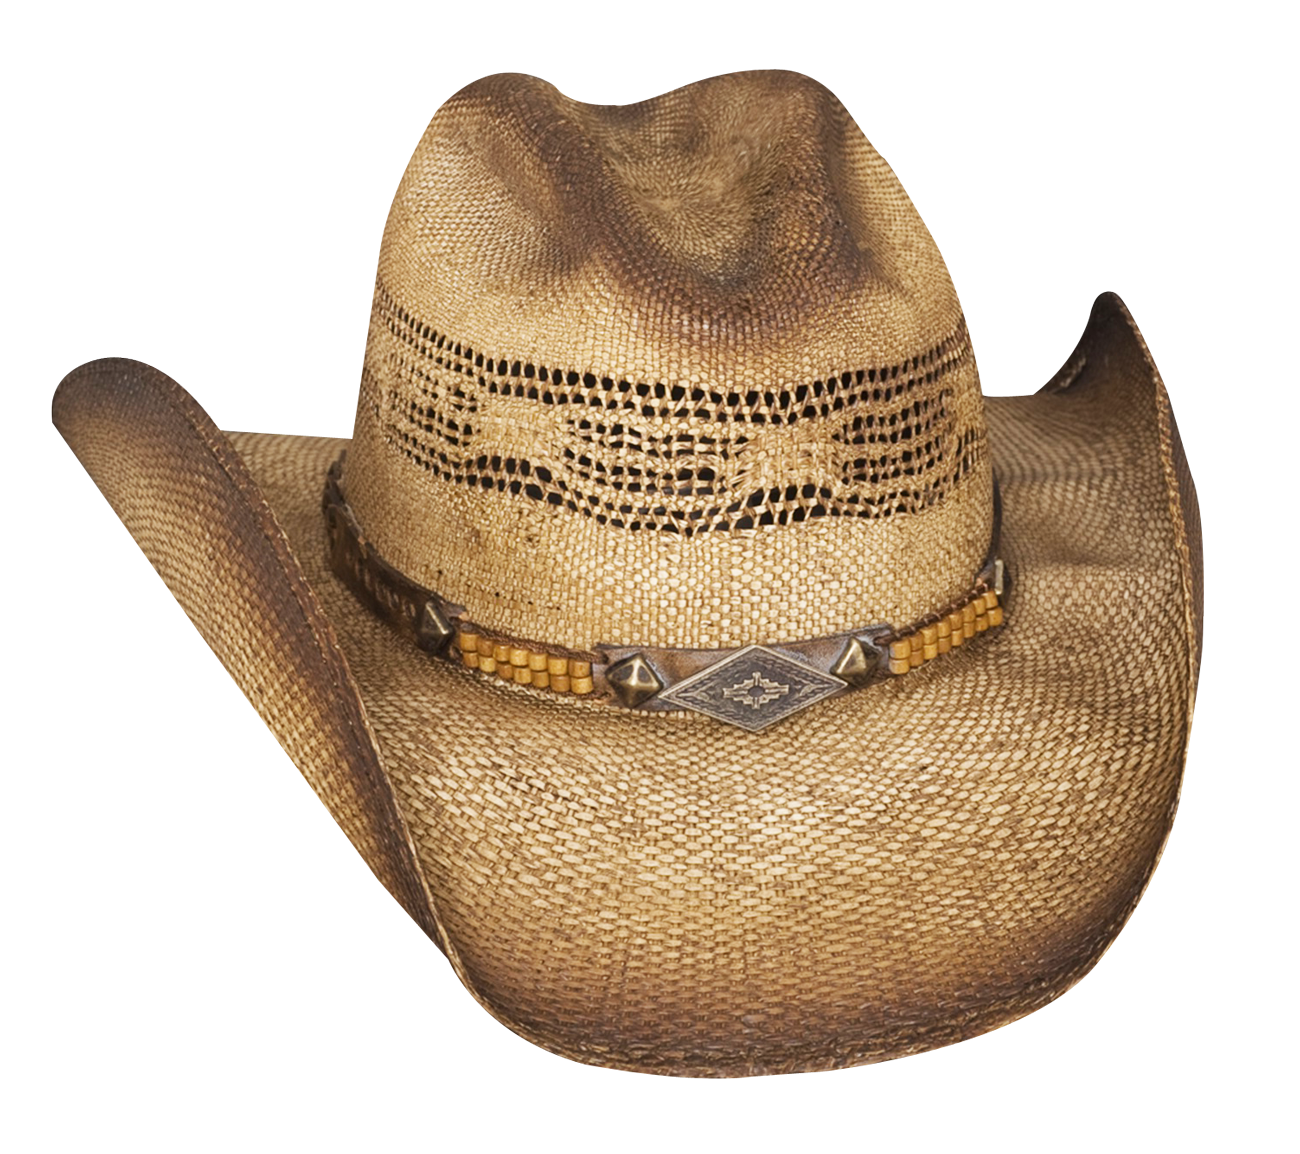 Cowboy hat transparent image 2 s png